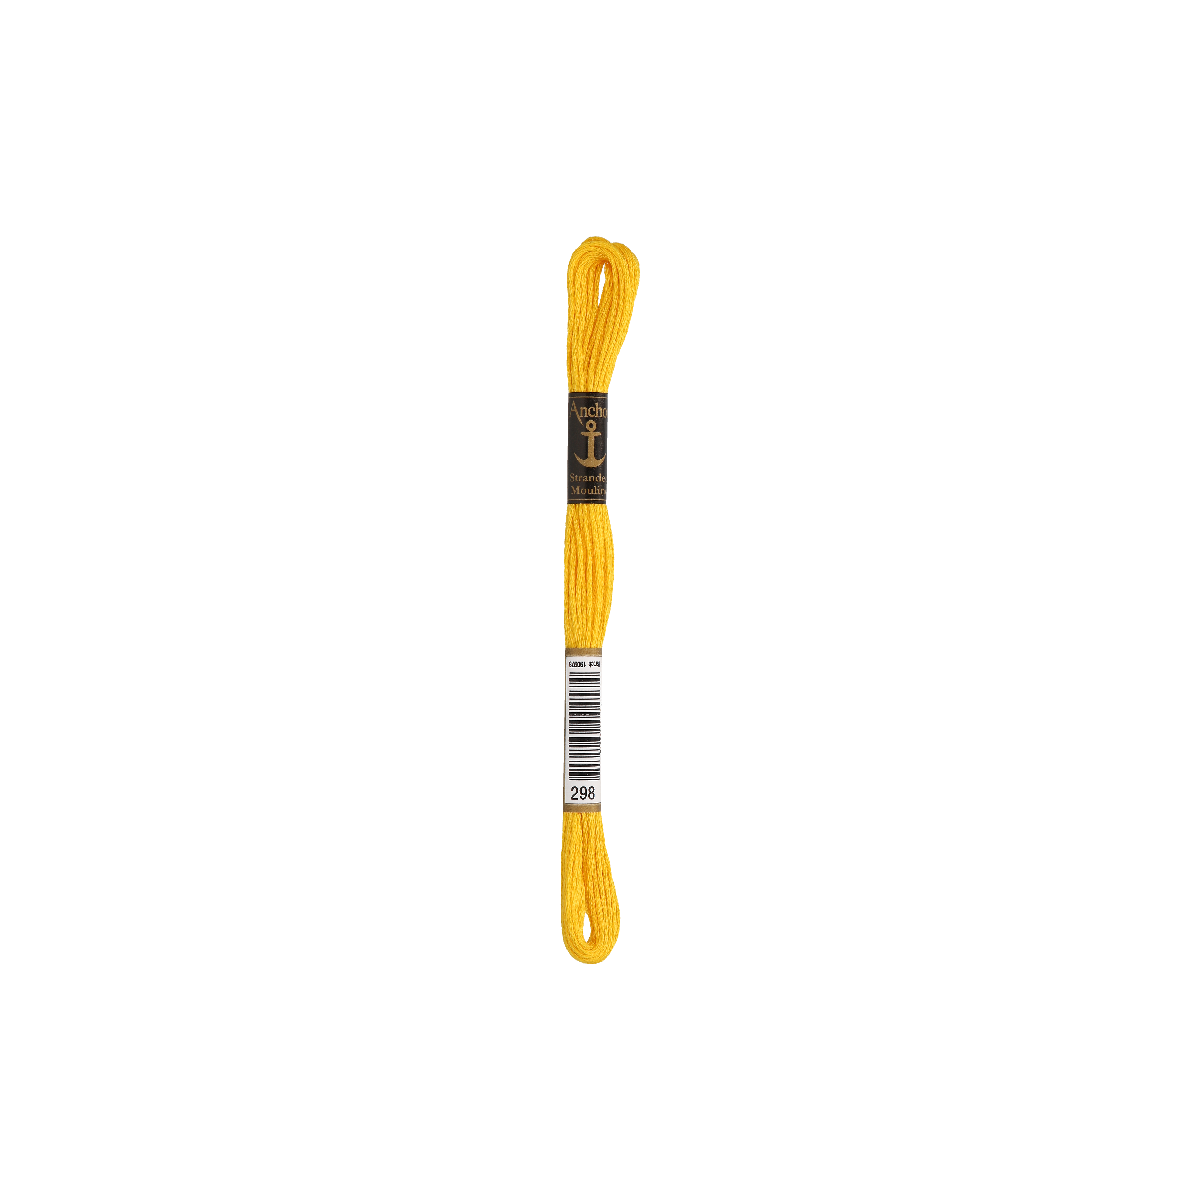 Anchor Sticktwist 8m, zonnig geel, katoen, kleur 298,...